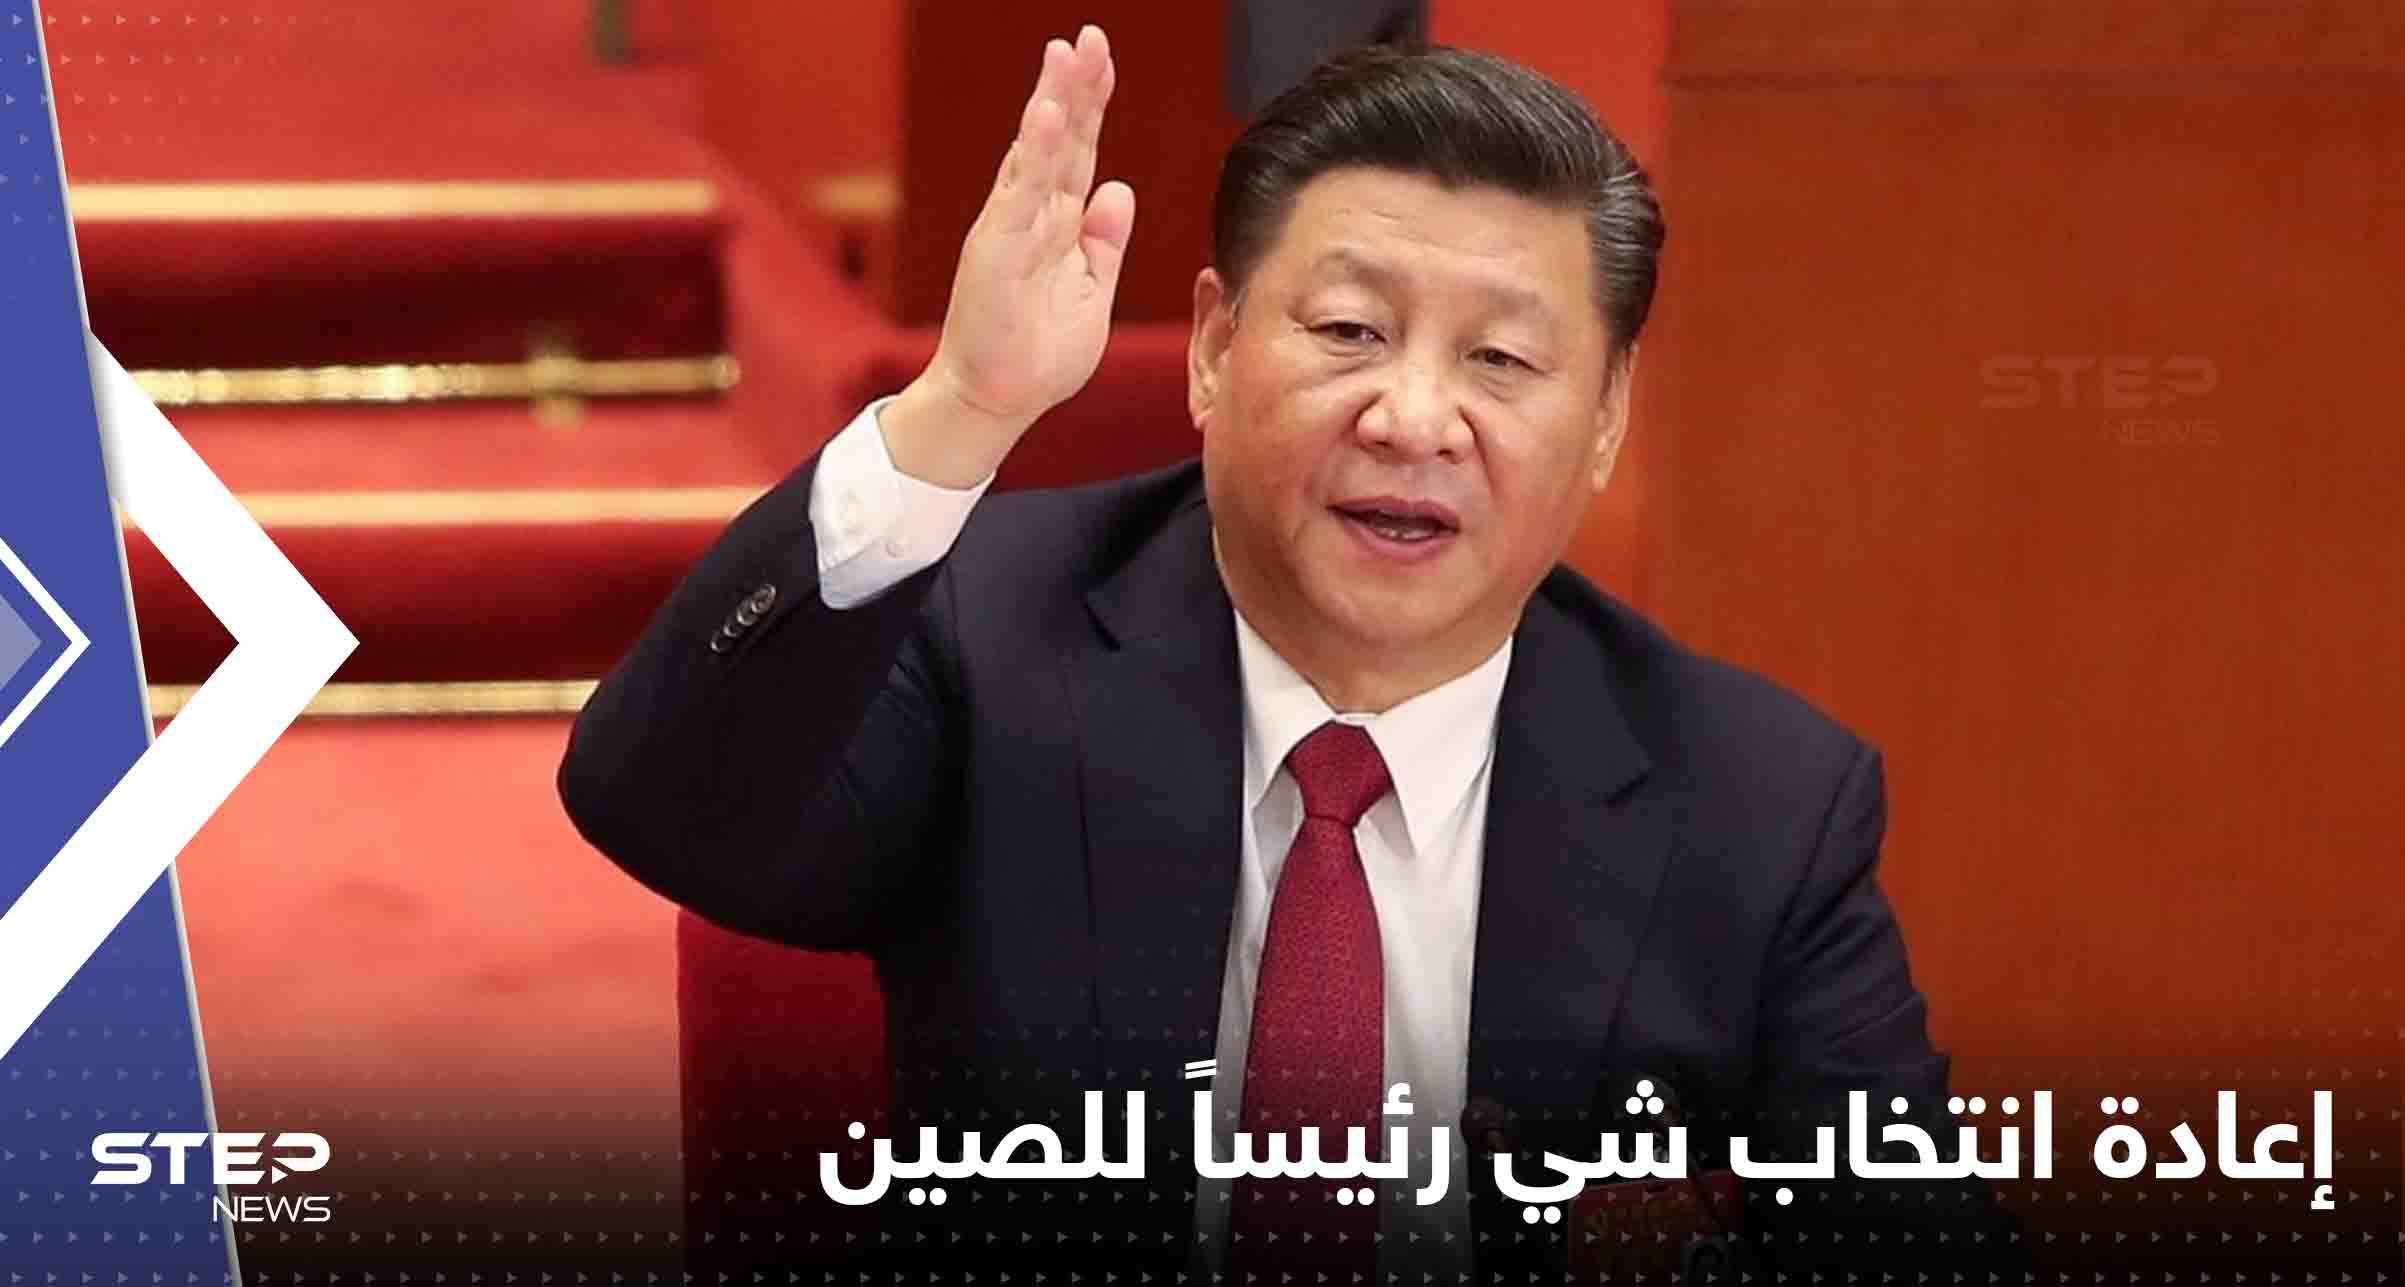 إعادة انتخاب شي رئيساً للصين